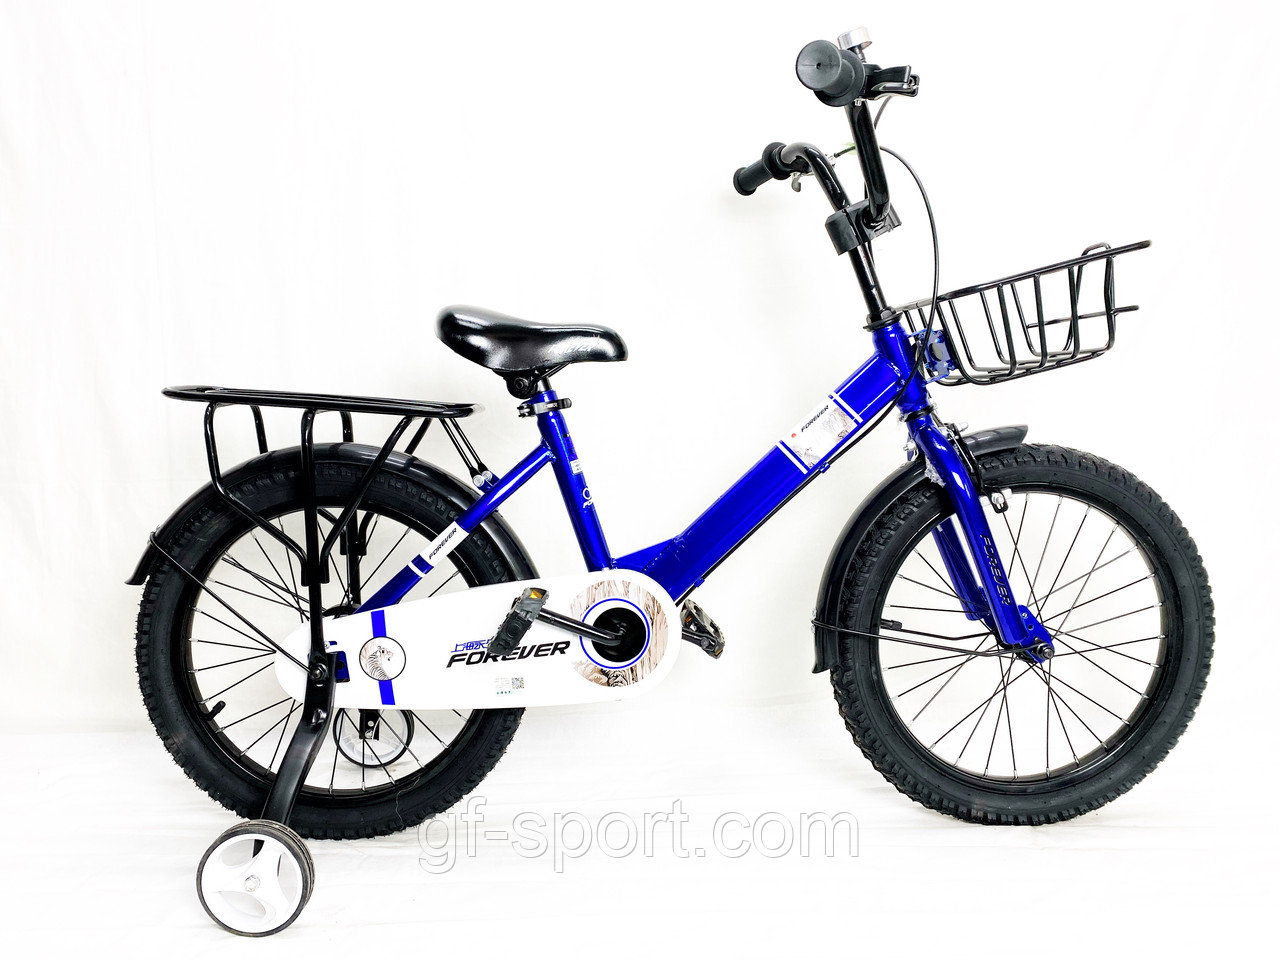 Велосипед Forever синий оригинал детский с холостым ходом 18 размер (547-18)